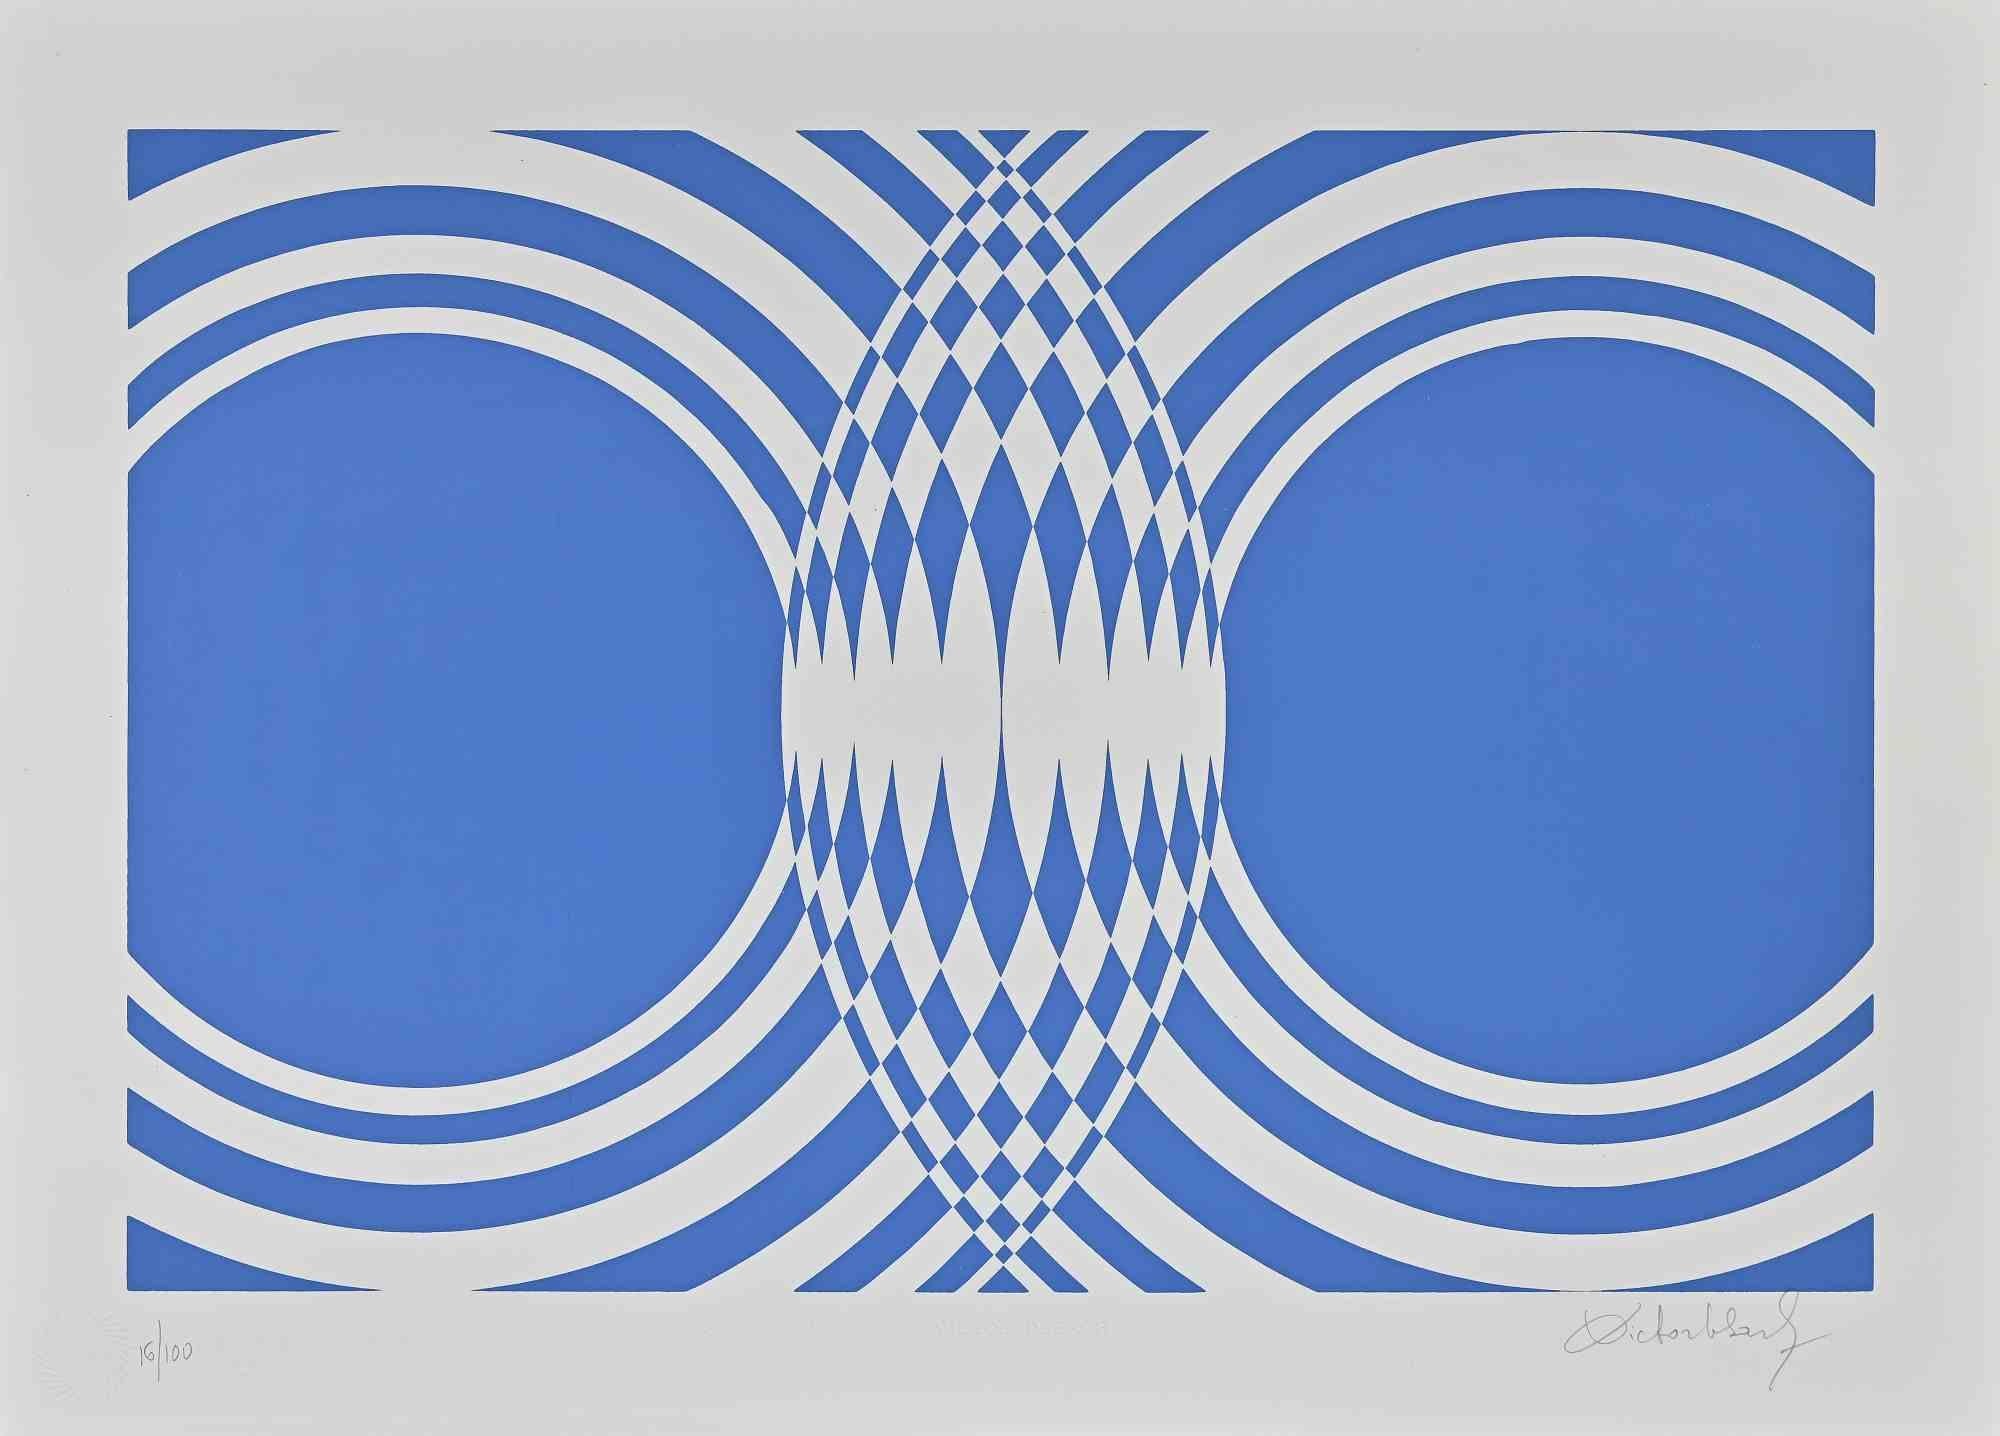 Blue Composition est une œuvre d'art contemporaine originale réalisée par Victor Debach dans les années 1970.

Sérigraphie de couleurs mélangées sur papier.

Signé à la main dans la marge inférieure droite.

Numéroté en bas à gauche.

Edition de